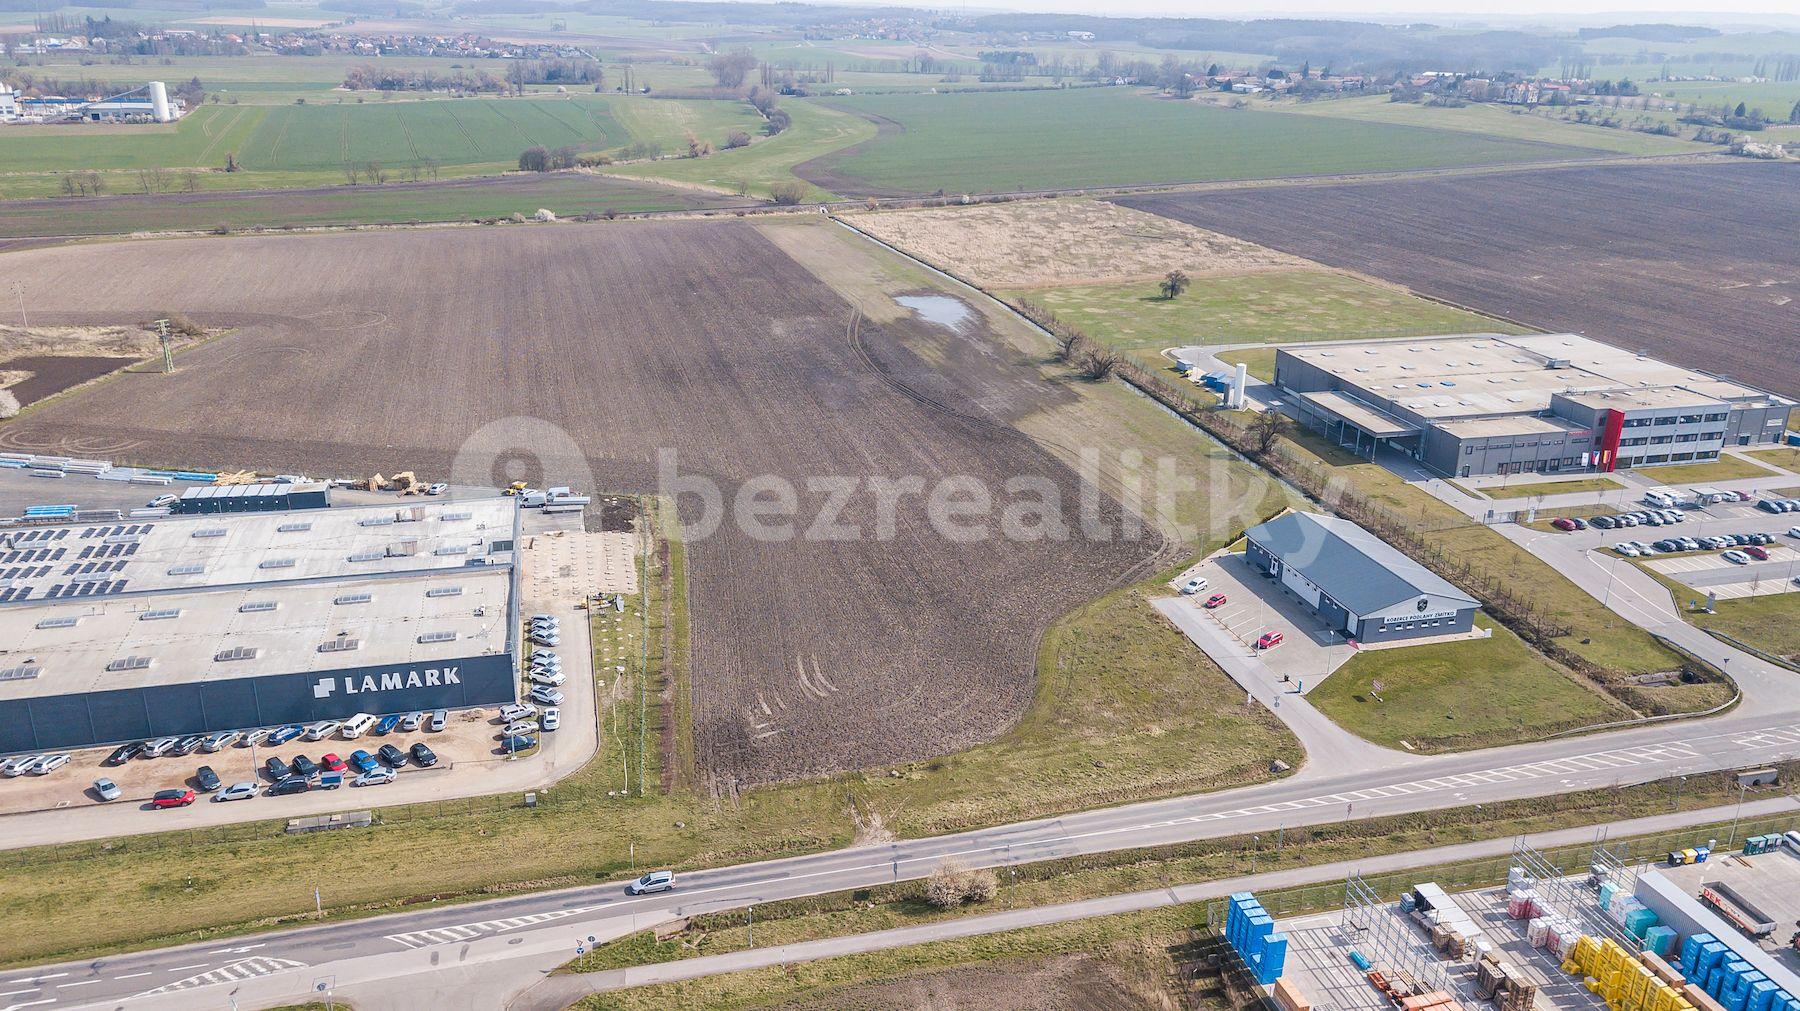 Predaj pozemku 610 m², Zábědov, Nový Bydžov, Královéhradecký kraj